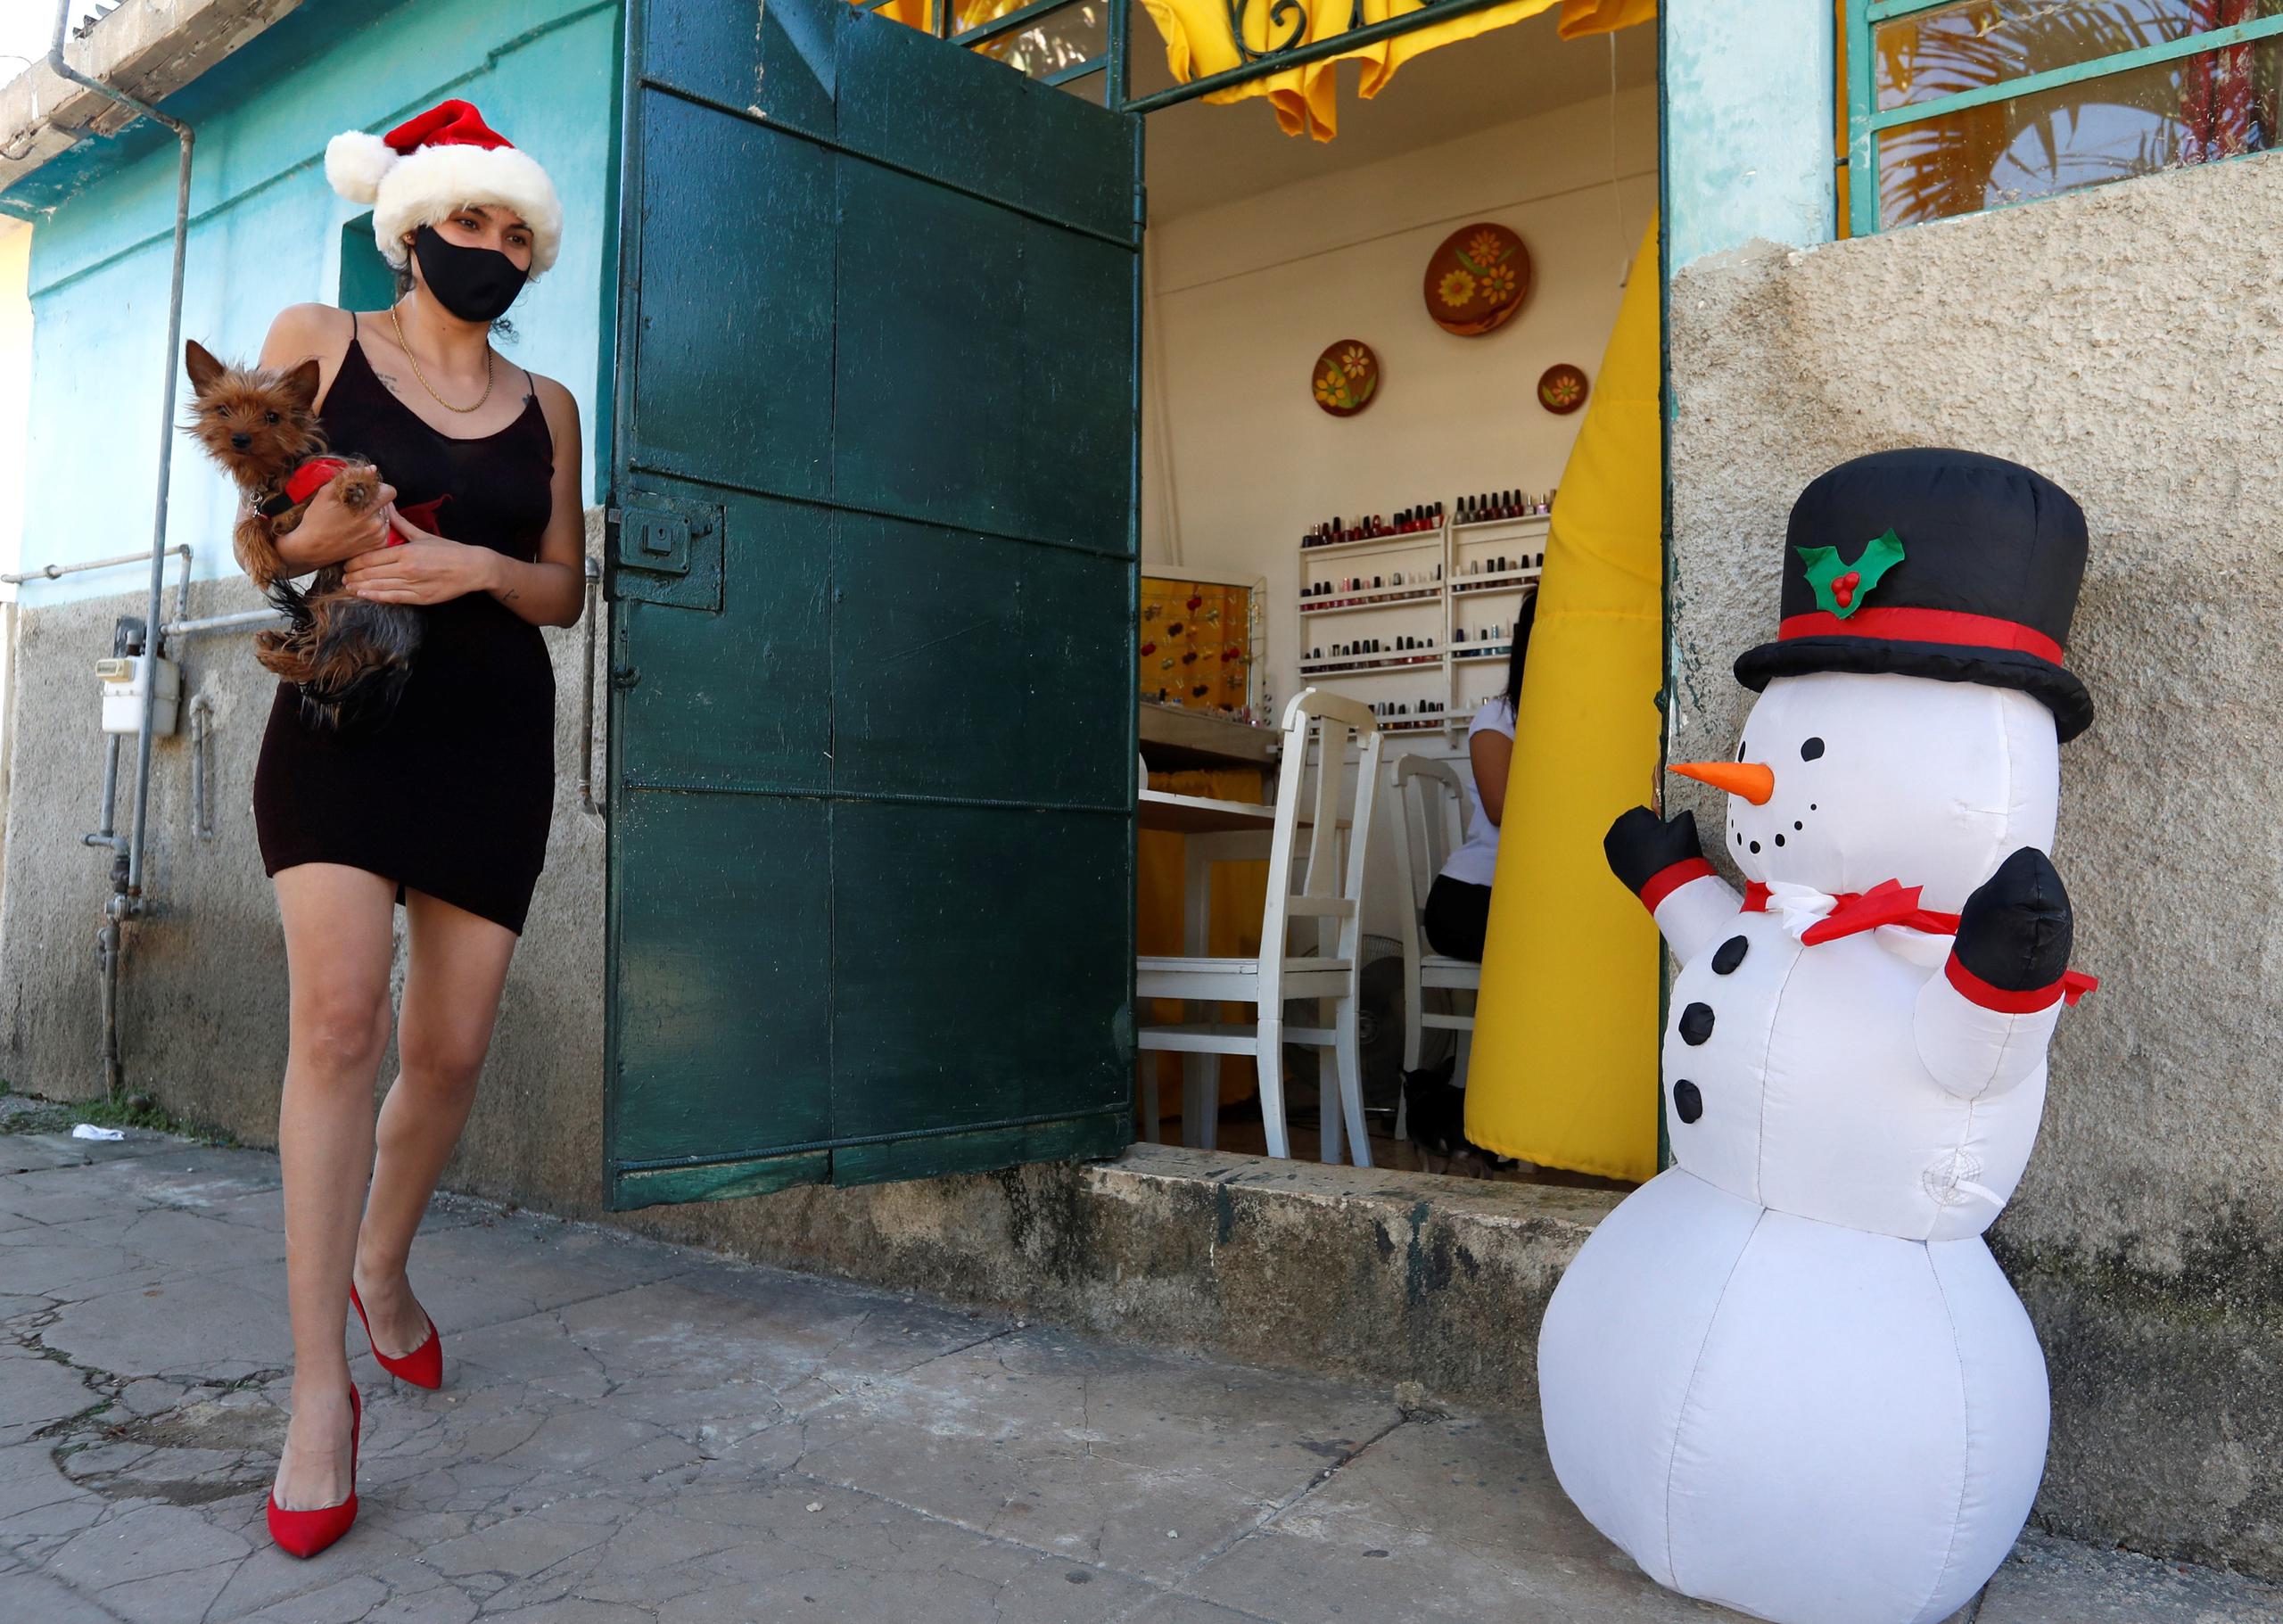 Una mujer con gorro navideño pasa caminando frente a un muñeco de nieve inflable, en La Habana, en una fotografía de archivo. EFE/Yander Zamora
